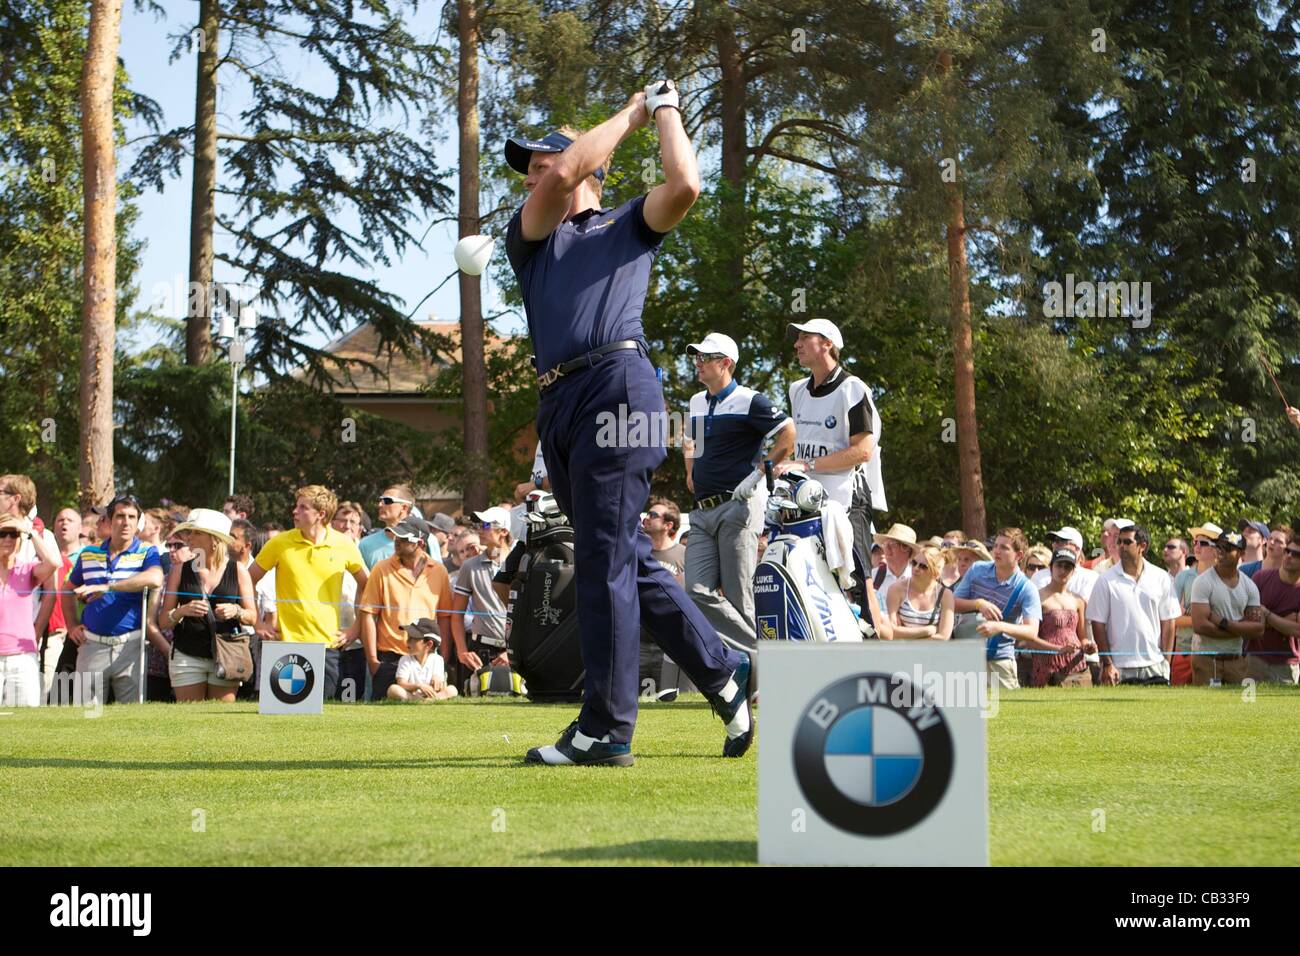 27.05.2012 Wentworth, Inghilterra. Luke Donald (ITA) in azione il giorno finale della BMW campionato di PGA. Foto Stock